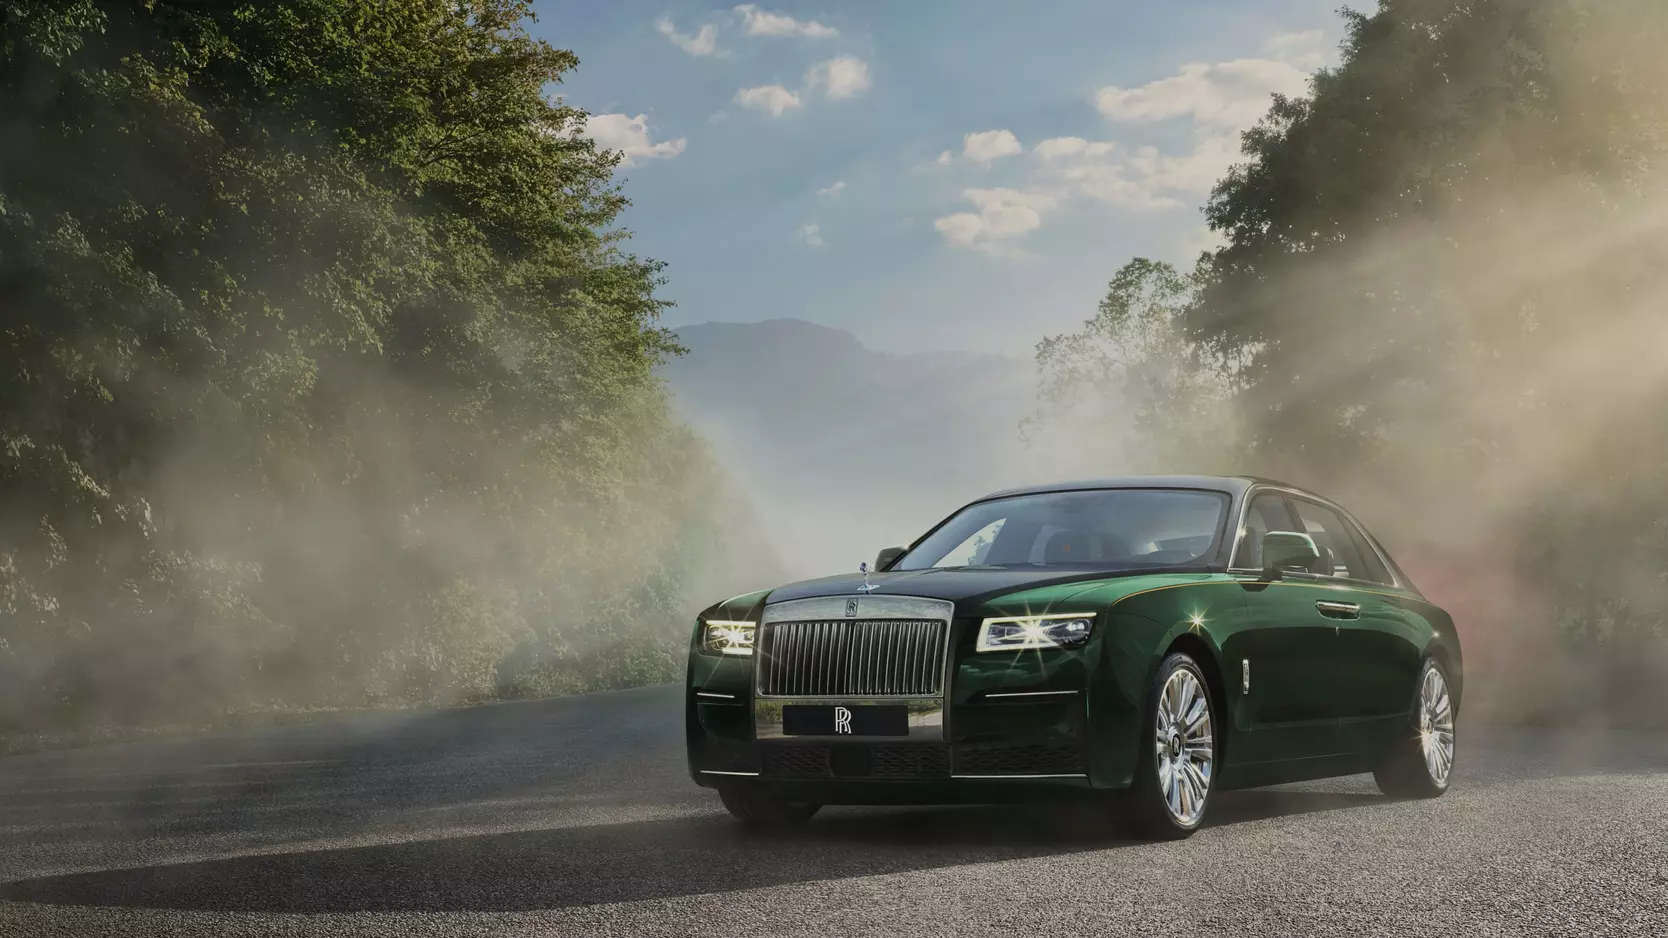 Harga Rolls Royce Ghost Extended Terbaru, Review Spesifikasi dan Interior!